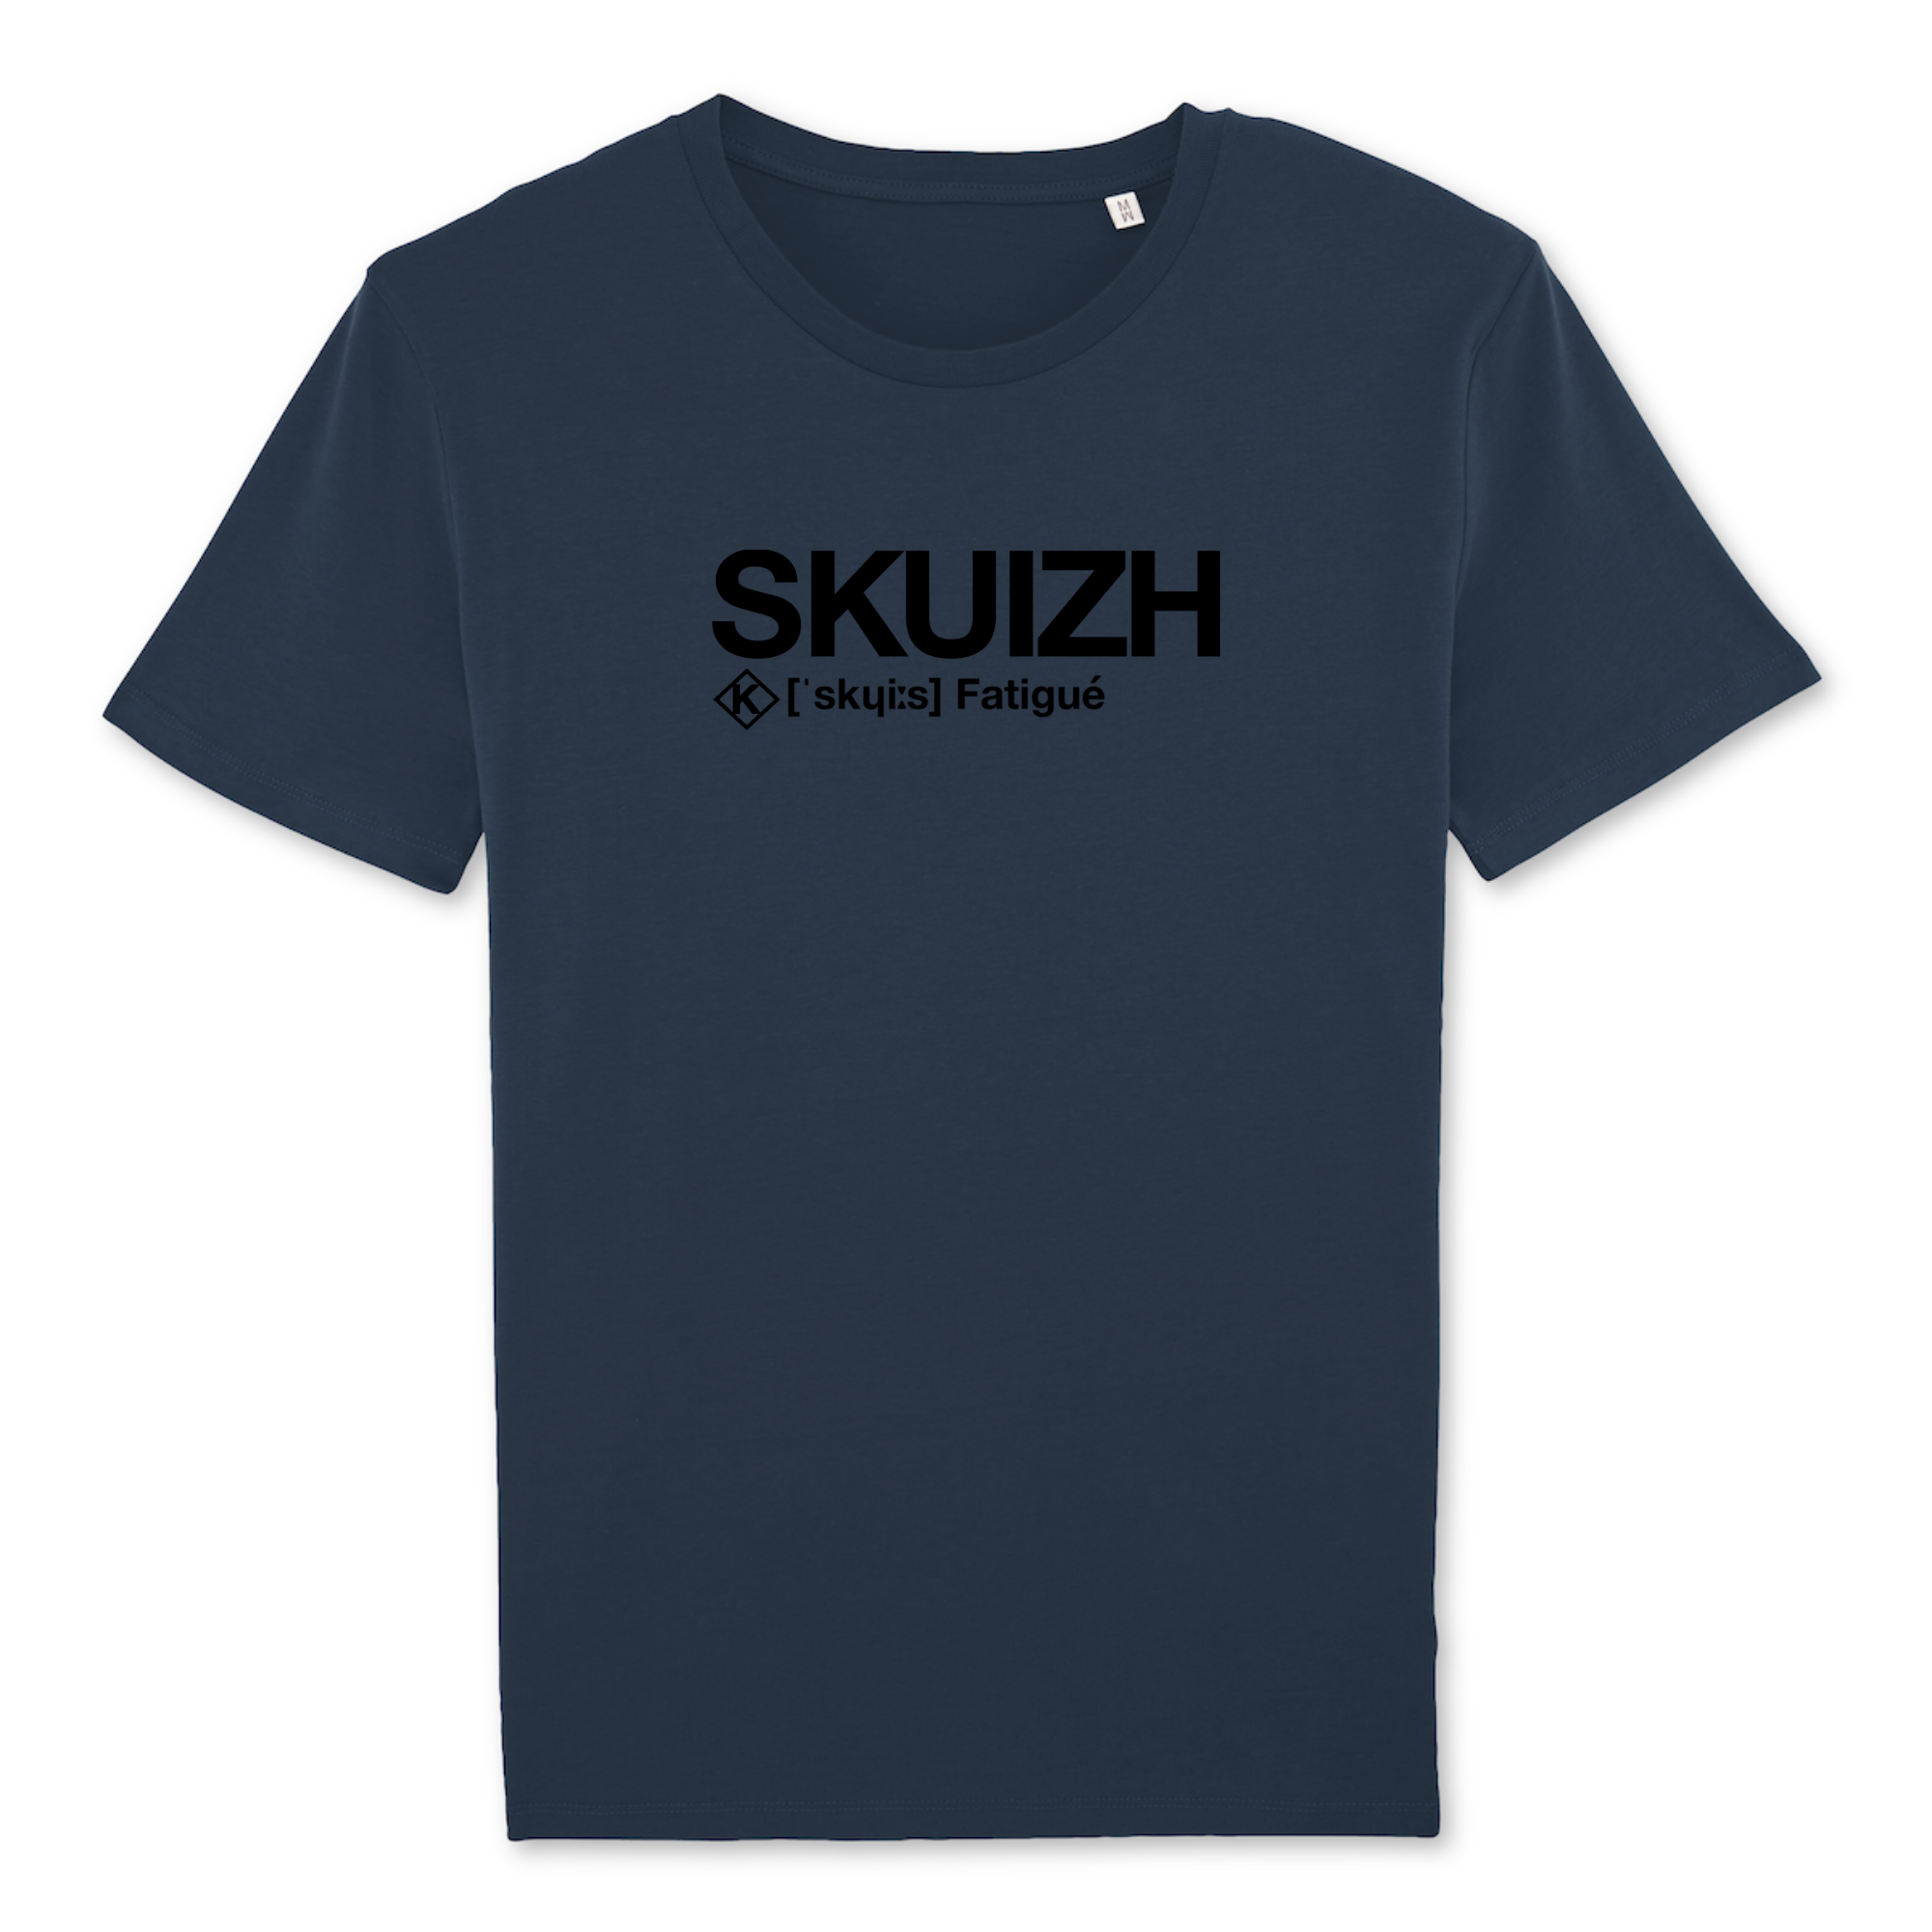 Skuizh T-shirt (Fatigué)